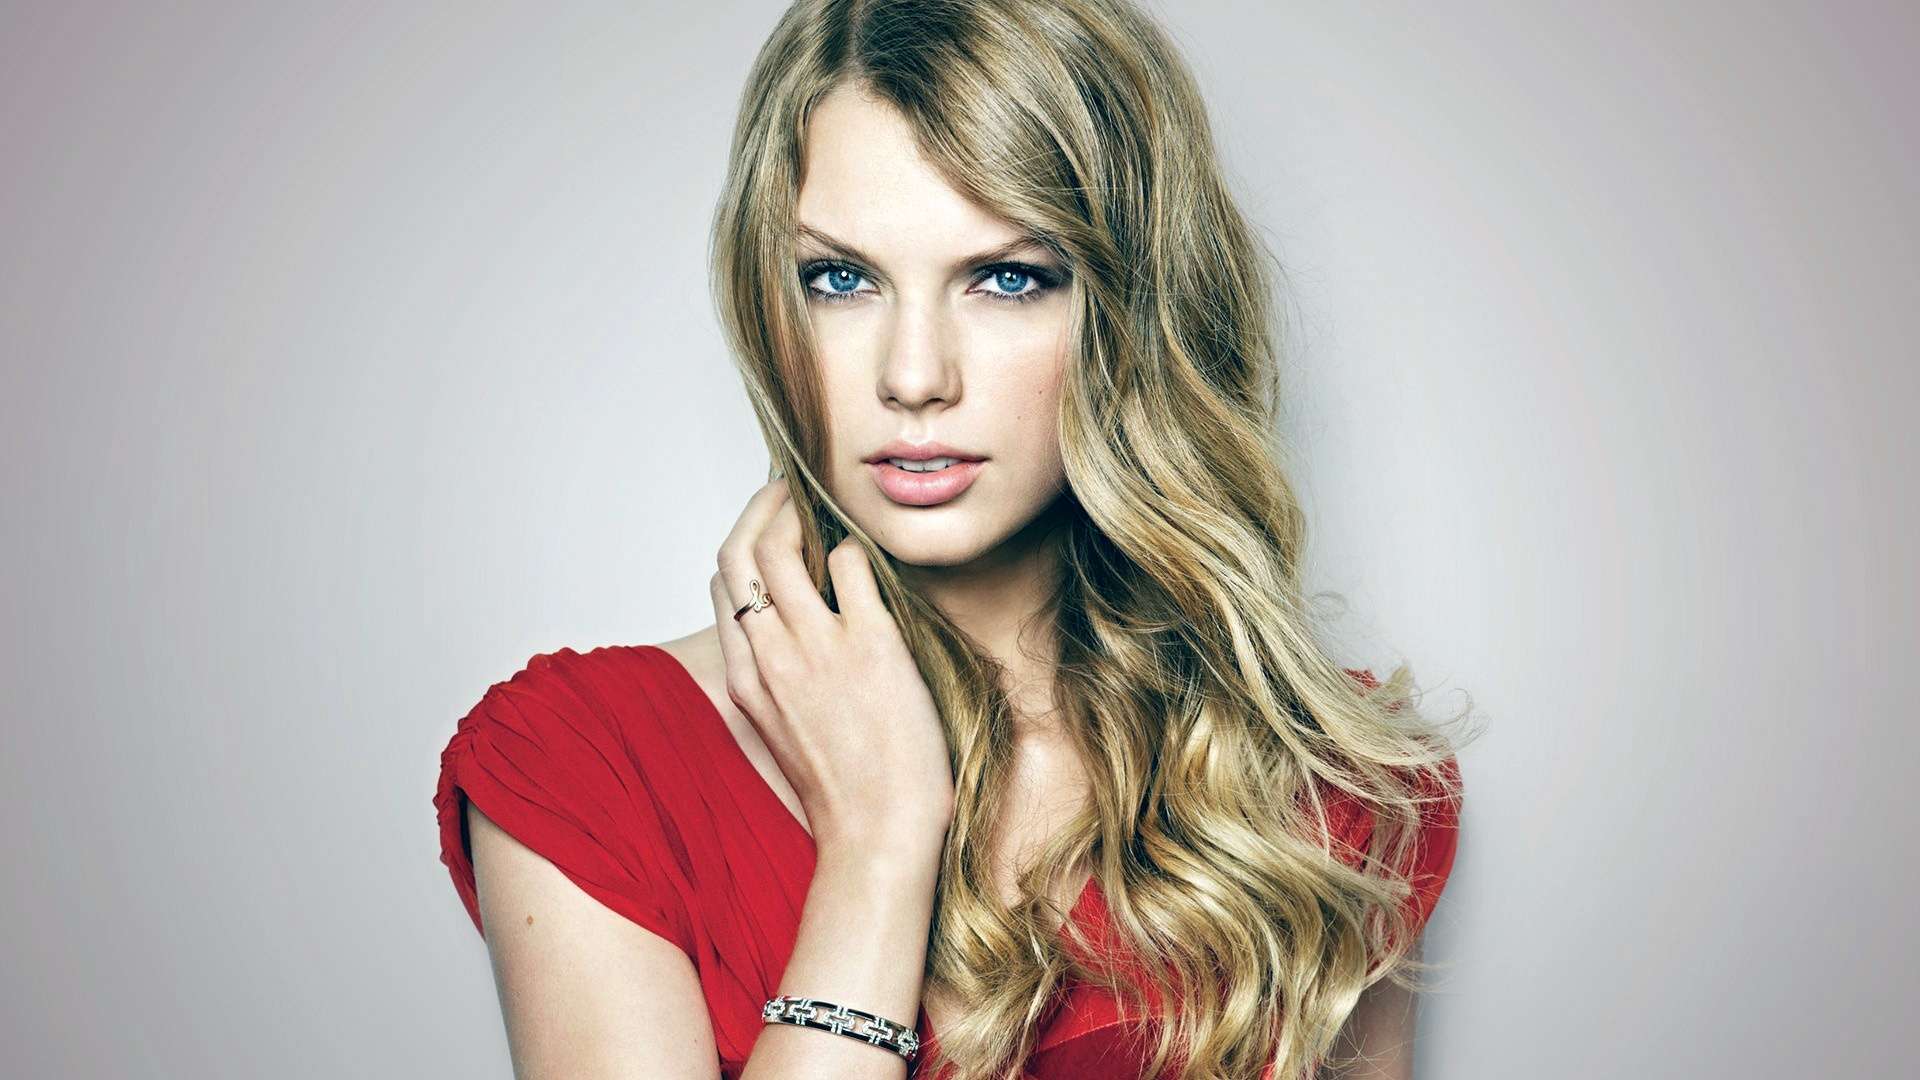 Wallpaper Taylor Swift HD 1080p Upload At May By